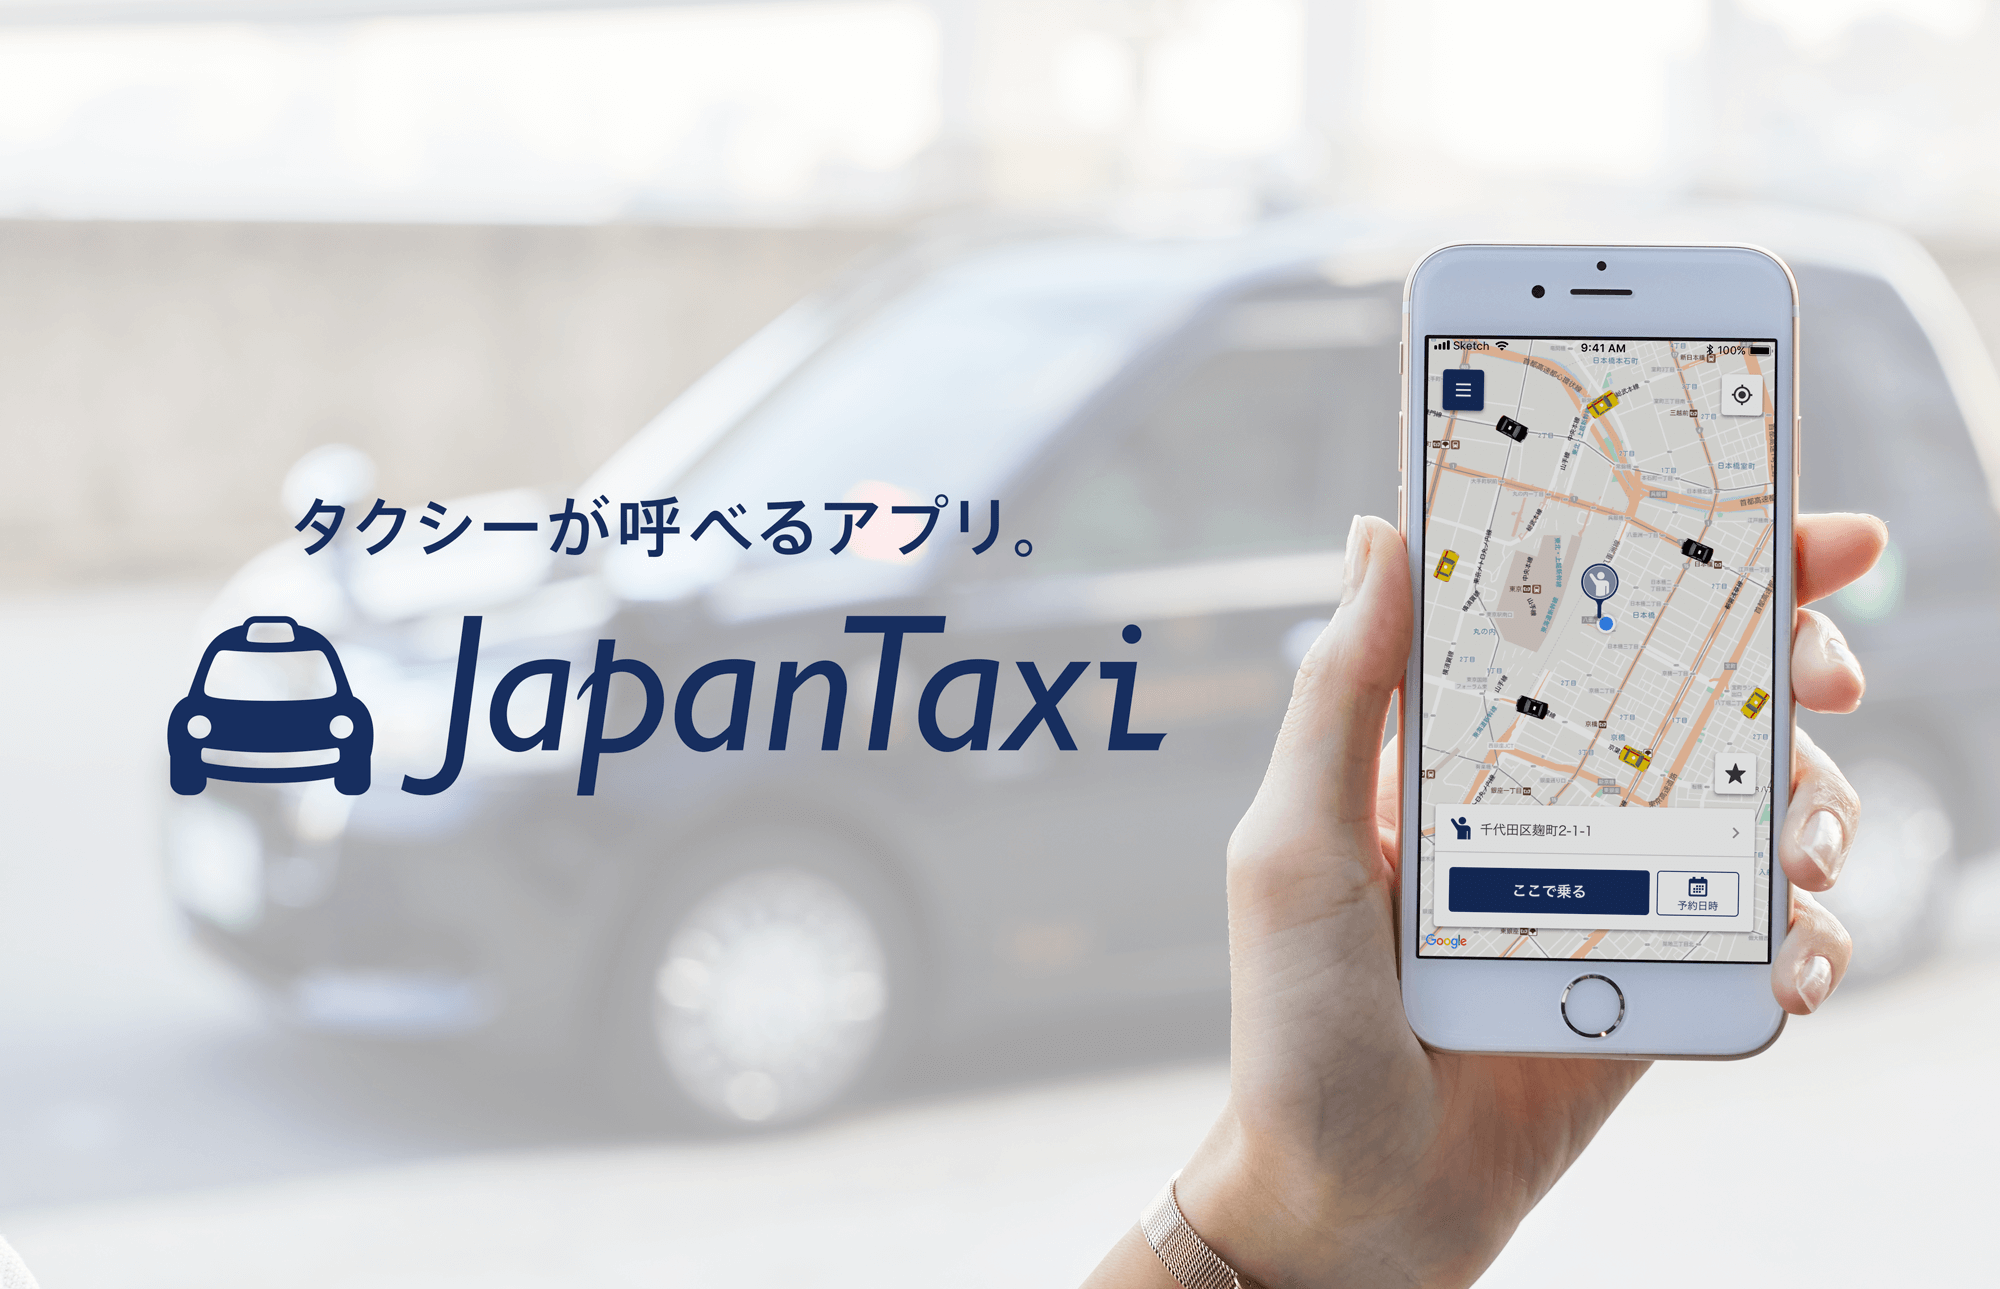 「Japan taxi」ビジネスマン御用達！使い方や特徴を解説！